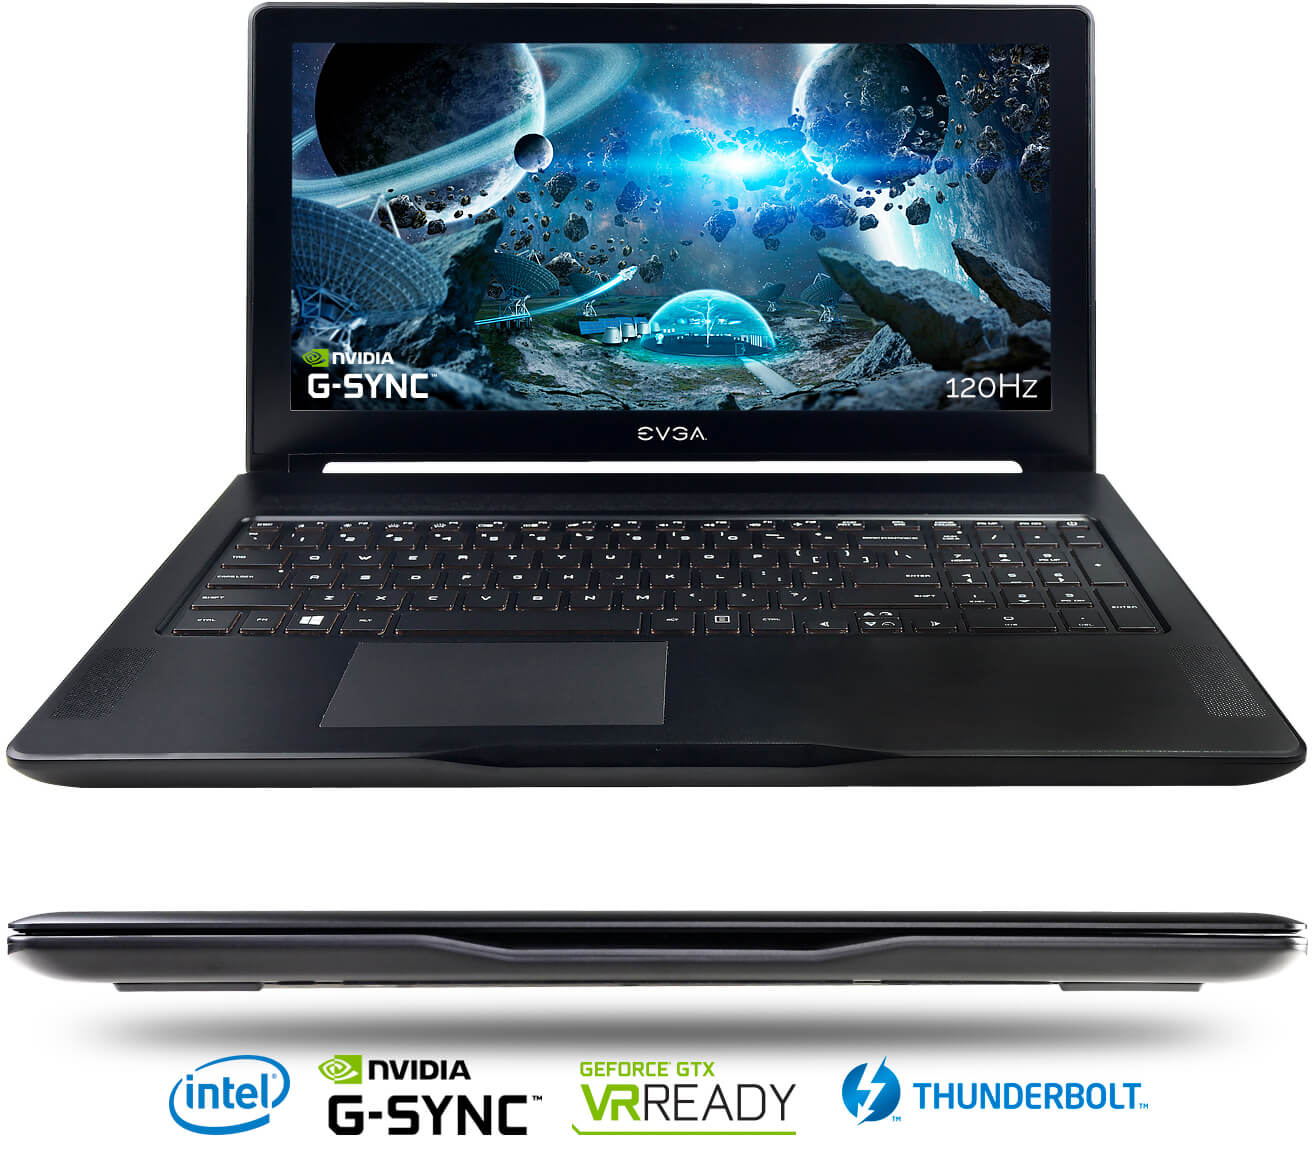 EVGA SC15 G-SYNC Gaming Laptop